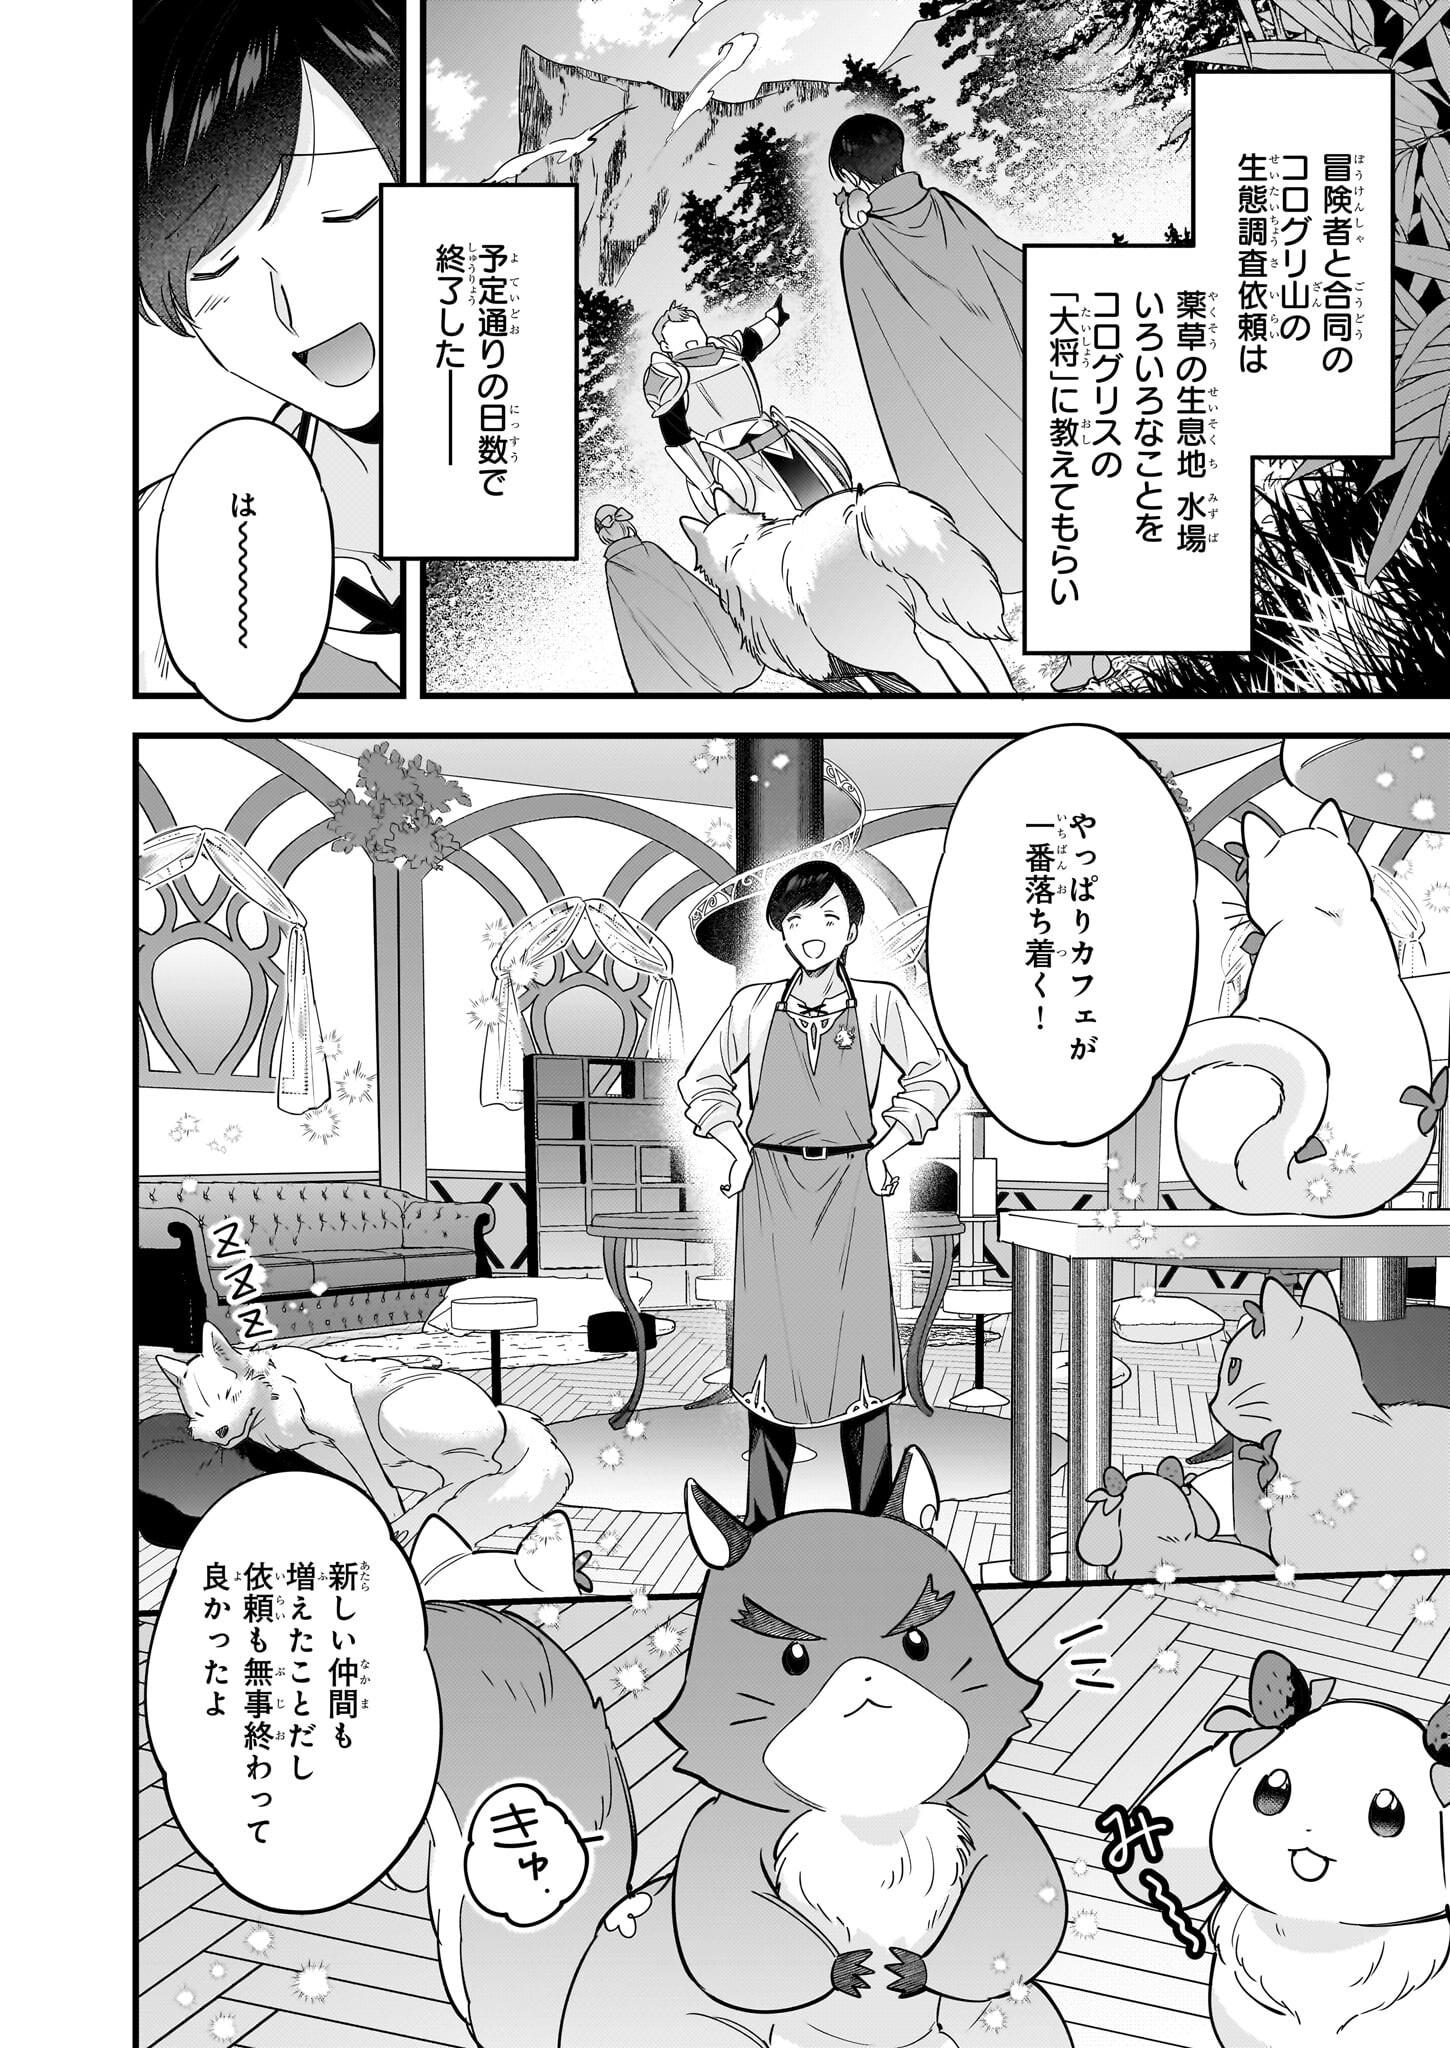 Isekai Mofumofu Cafe - Chapter 27 - Page 2